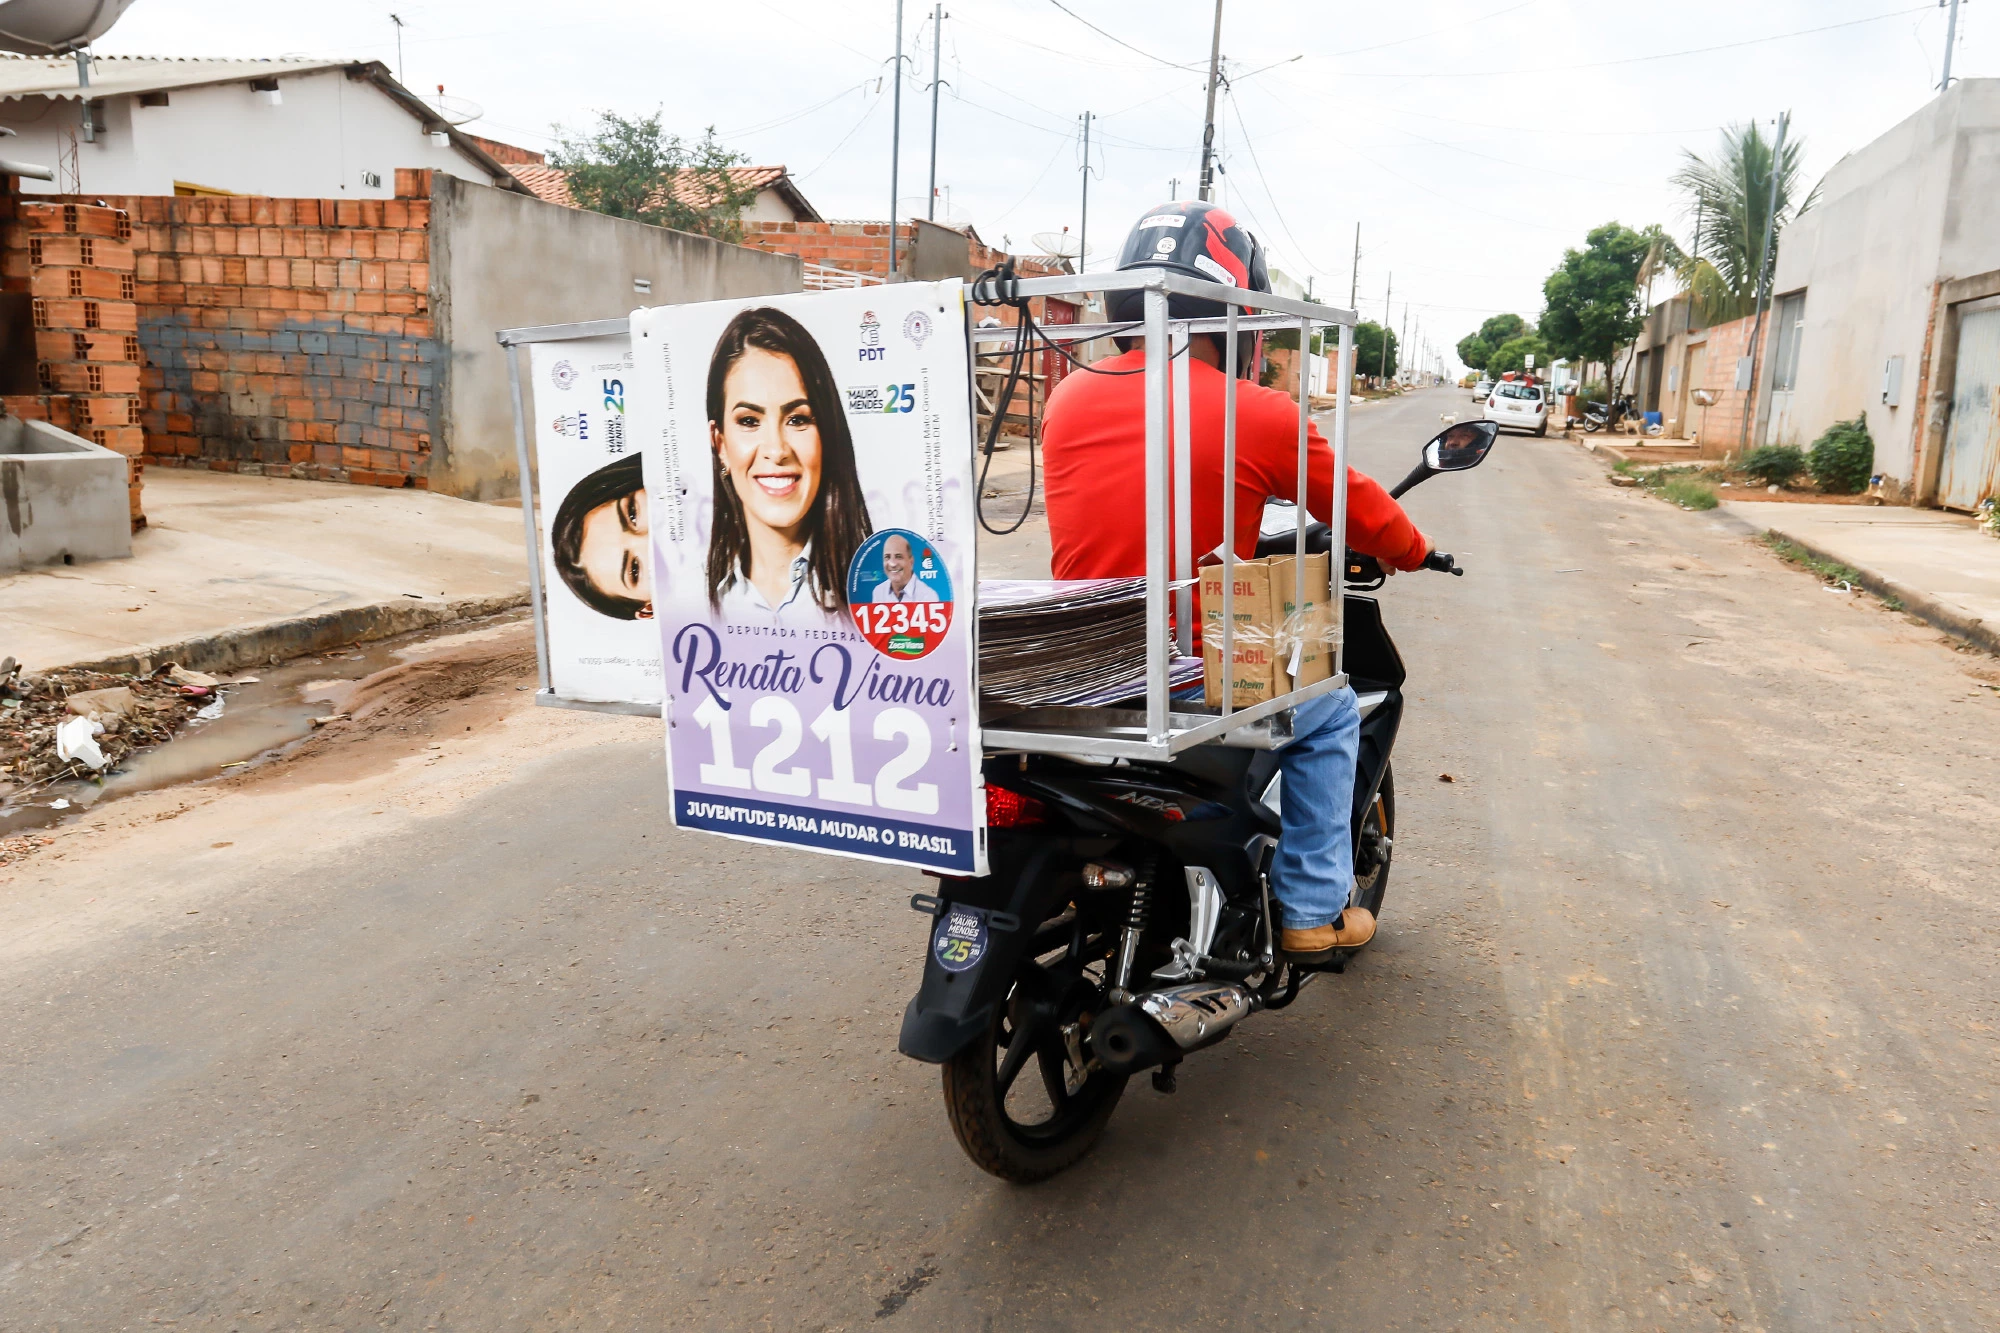 Cabo eleitoral espalha cartazes de campanha de Renata Viana, sobrinha do candidato Zeca Viana (PDT-MT), em bairro pobre de Primavera do Leste.